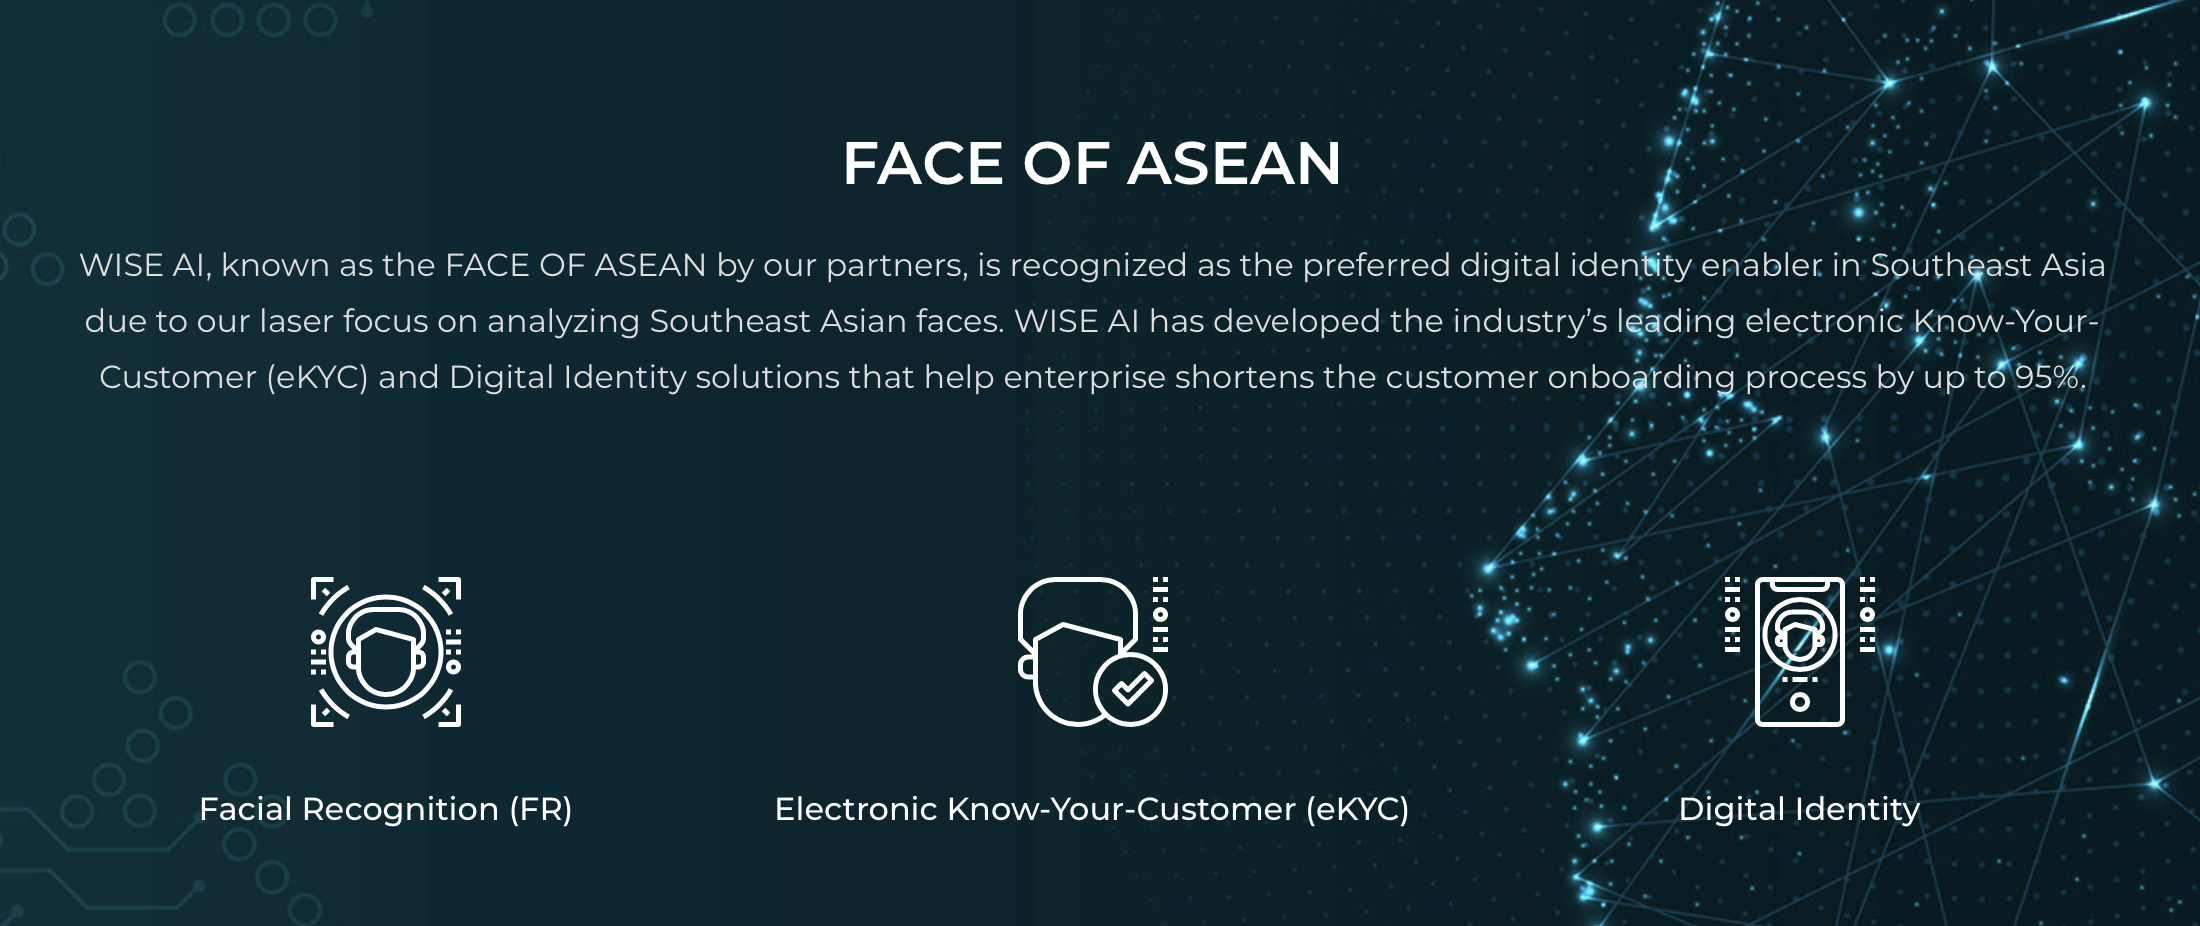 Face of ASEAN